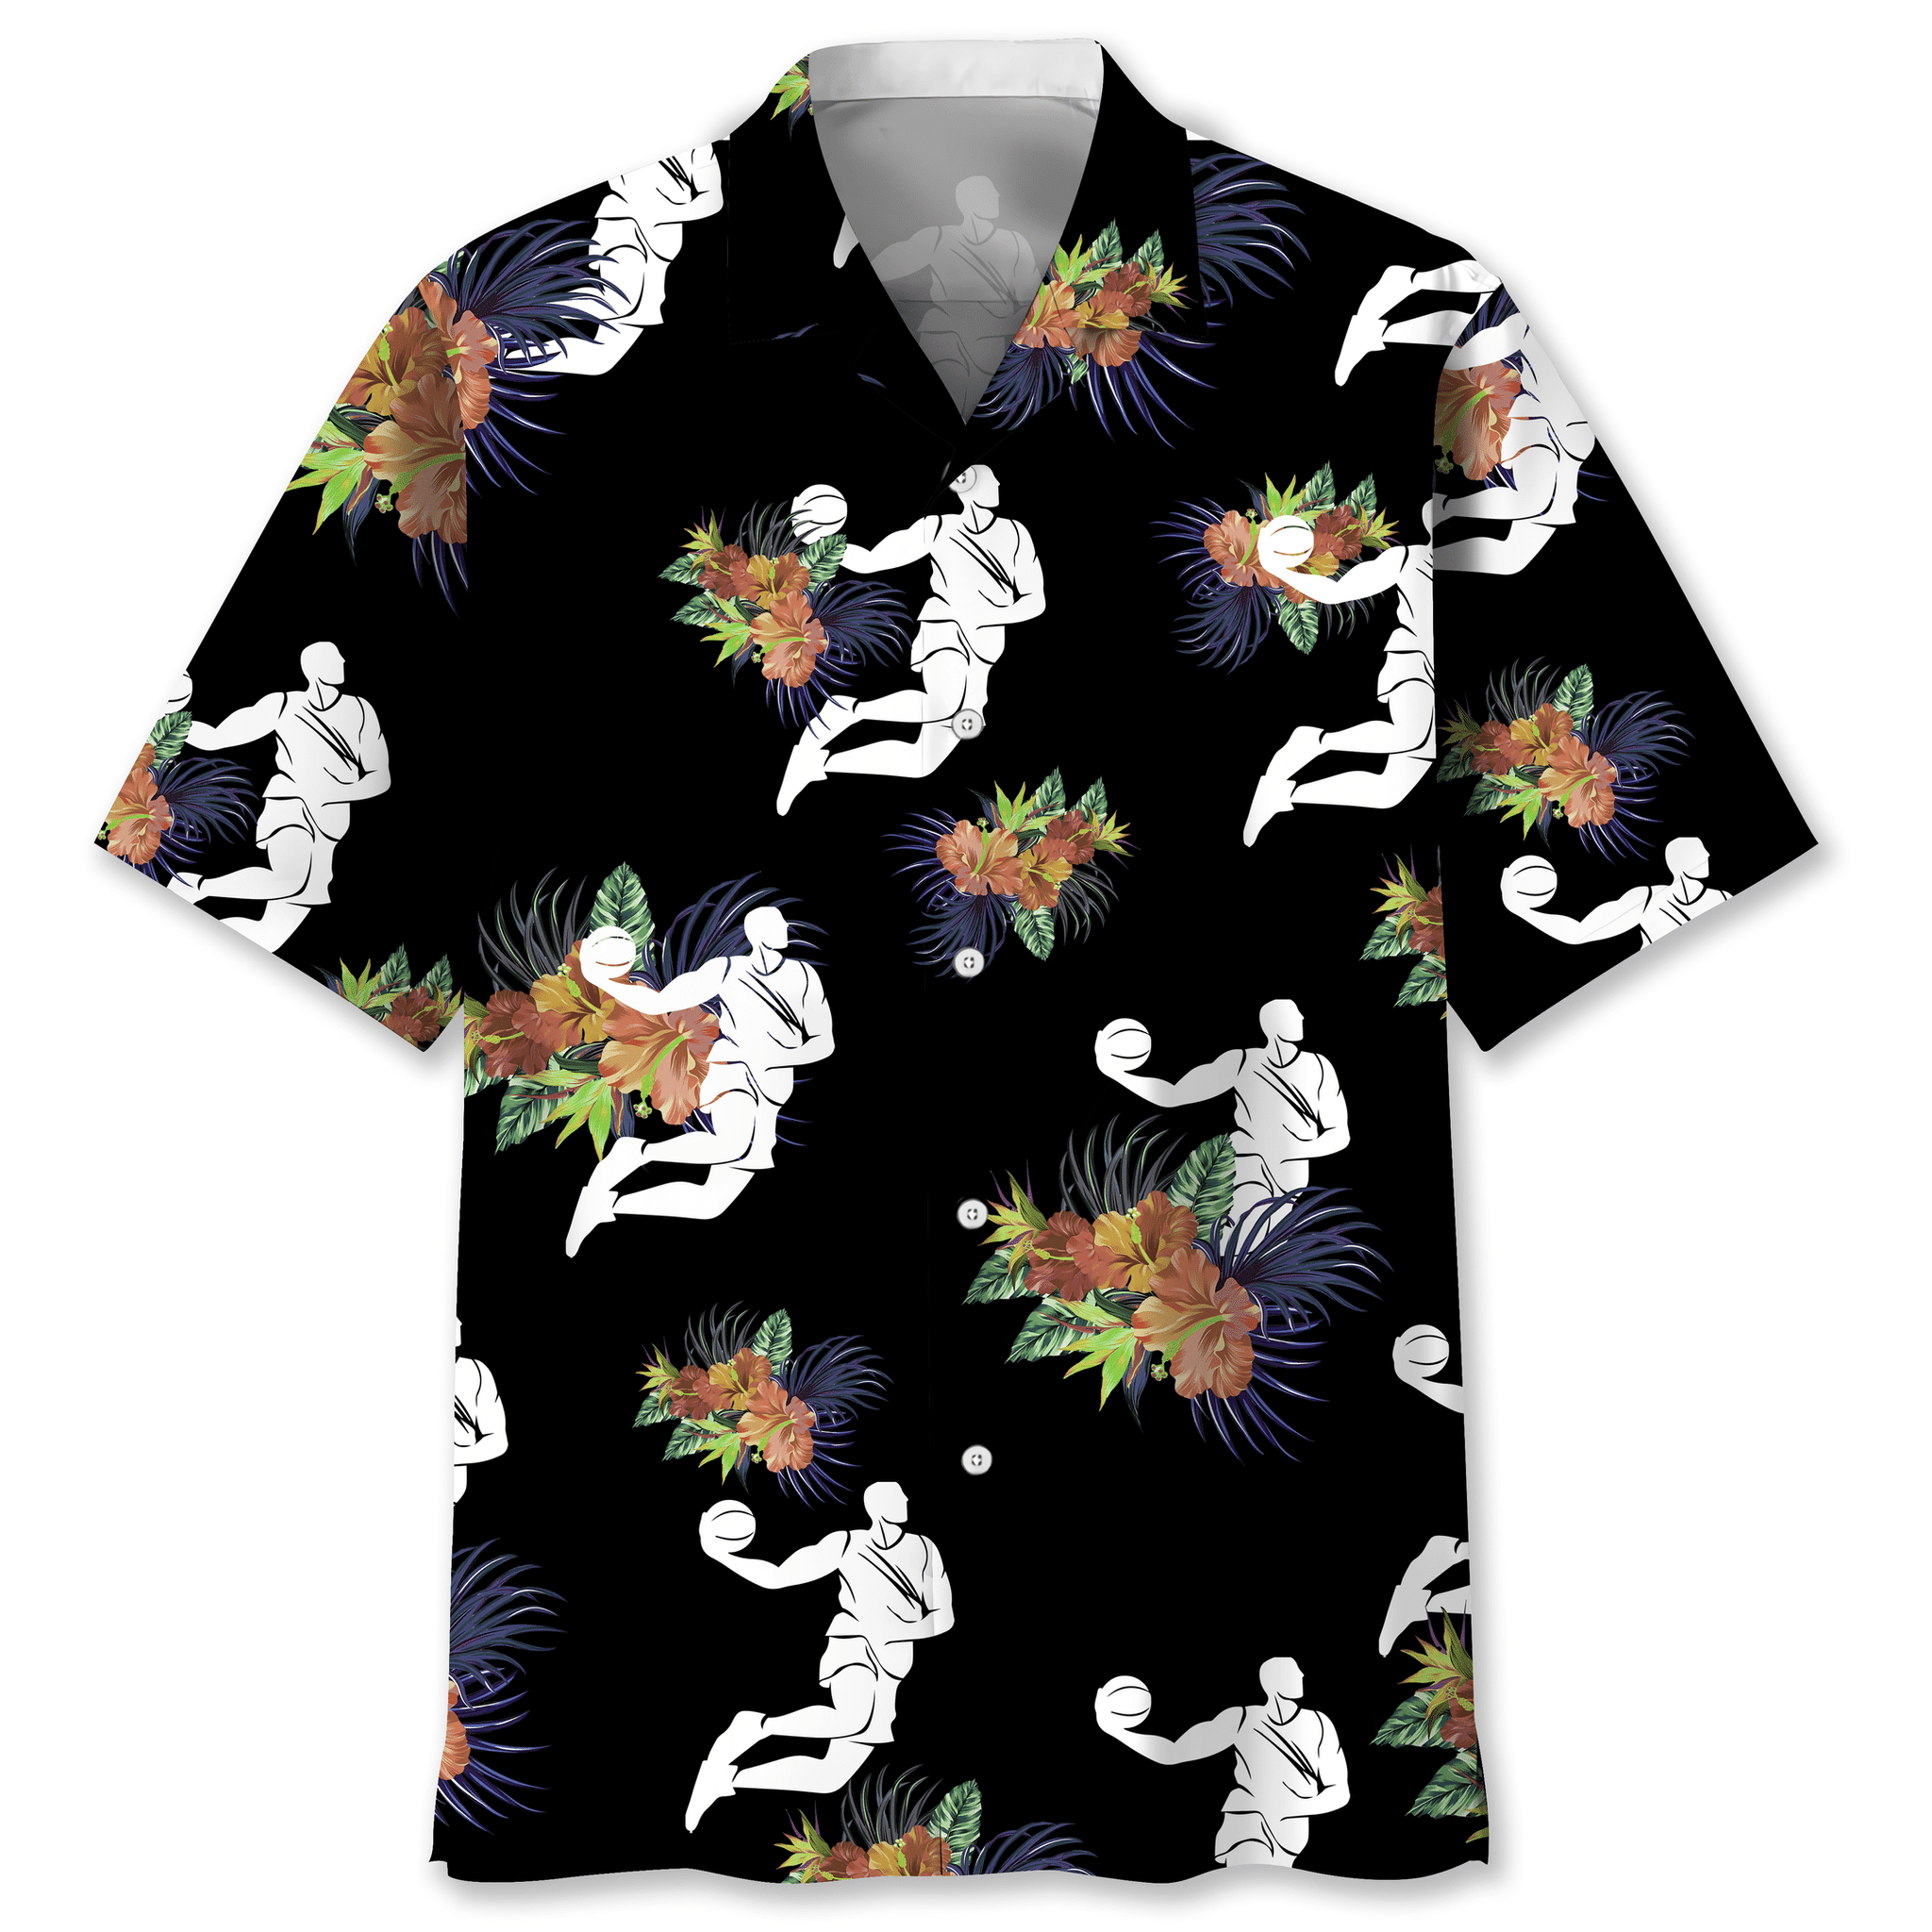 Basketball nature Hawaiian shirt and short – LIMITED EDITION